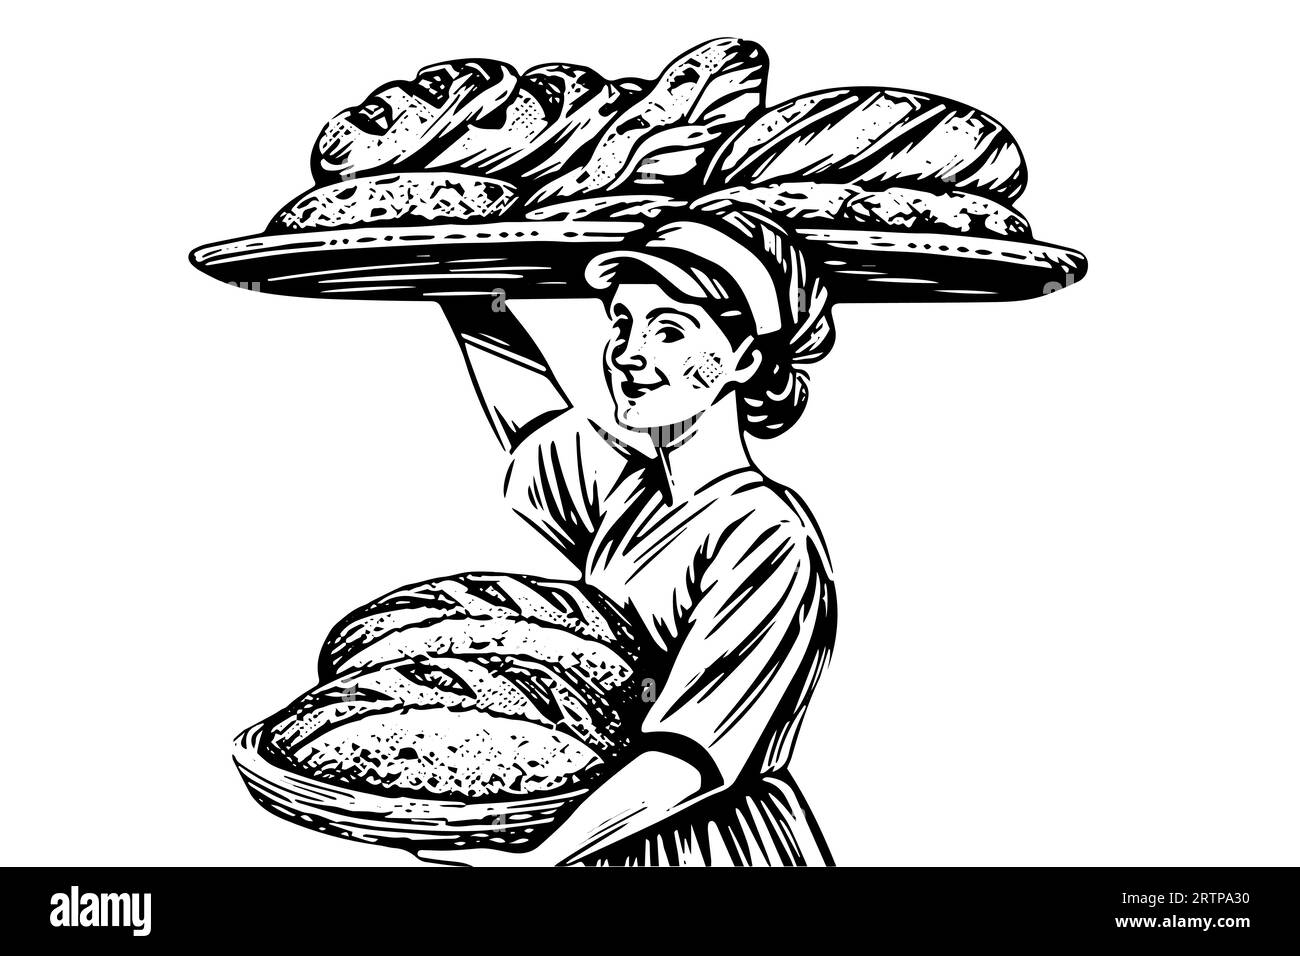 Croquis à l'encre dessiné à la main d'une boulanger femelle avec du pain cuit sur un plateau Illustration vectorielle de style gravé. Conception pour logotype, publicité. Illustration de Vecteur